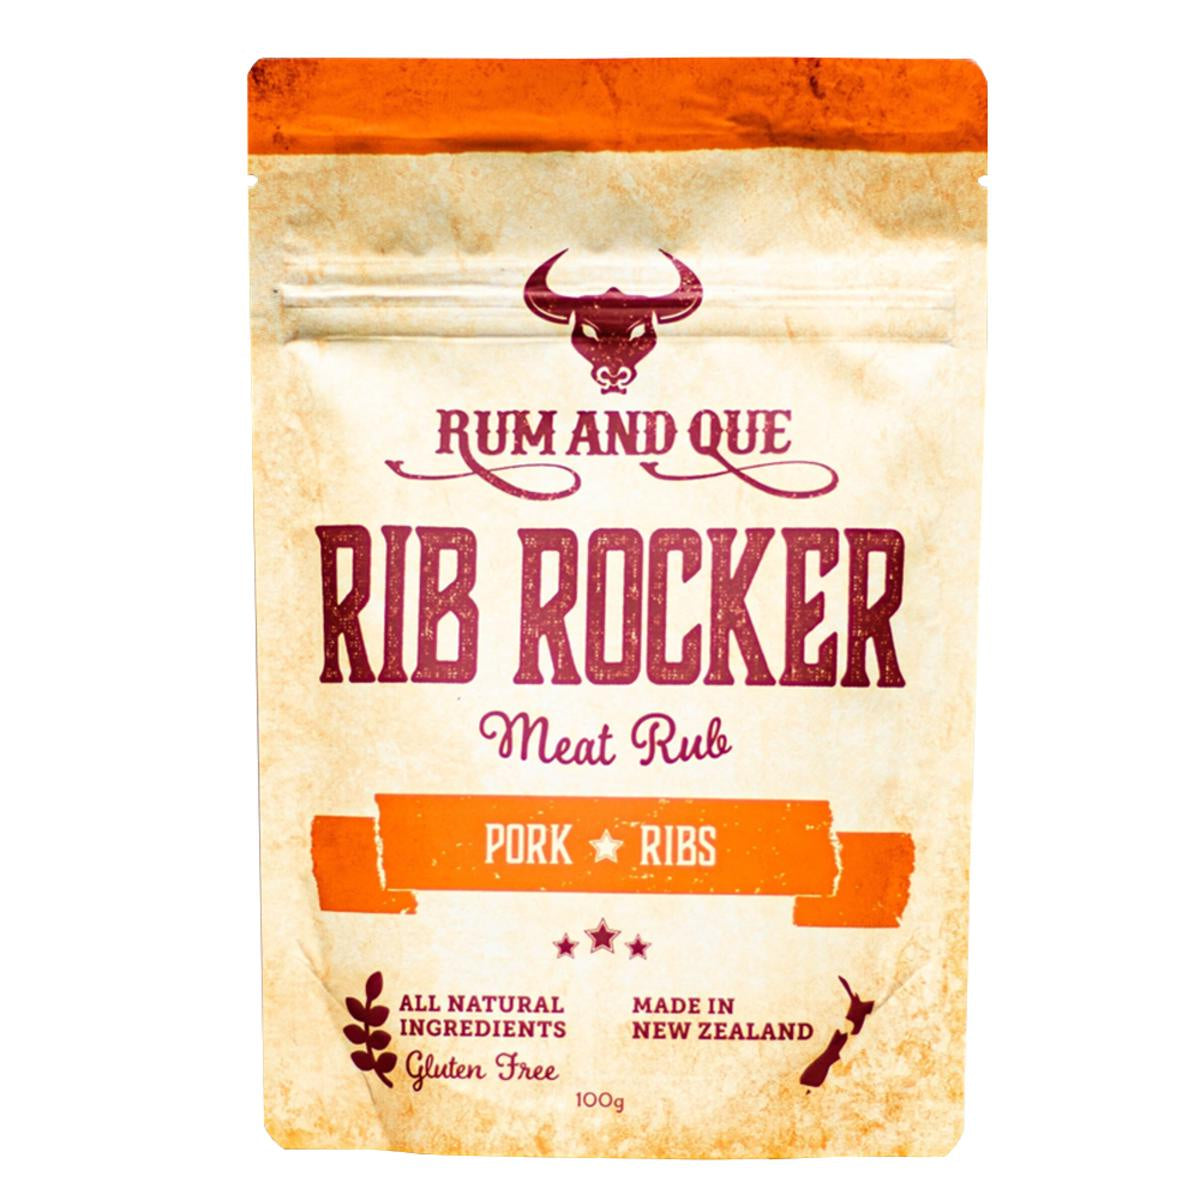 Rum & Que Rib Rocker Meat Rub 150g